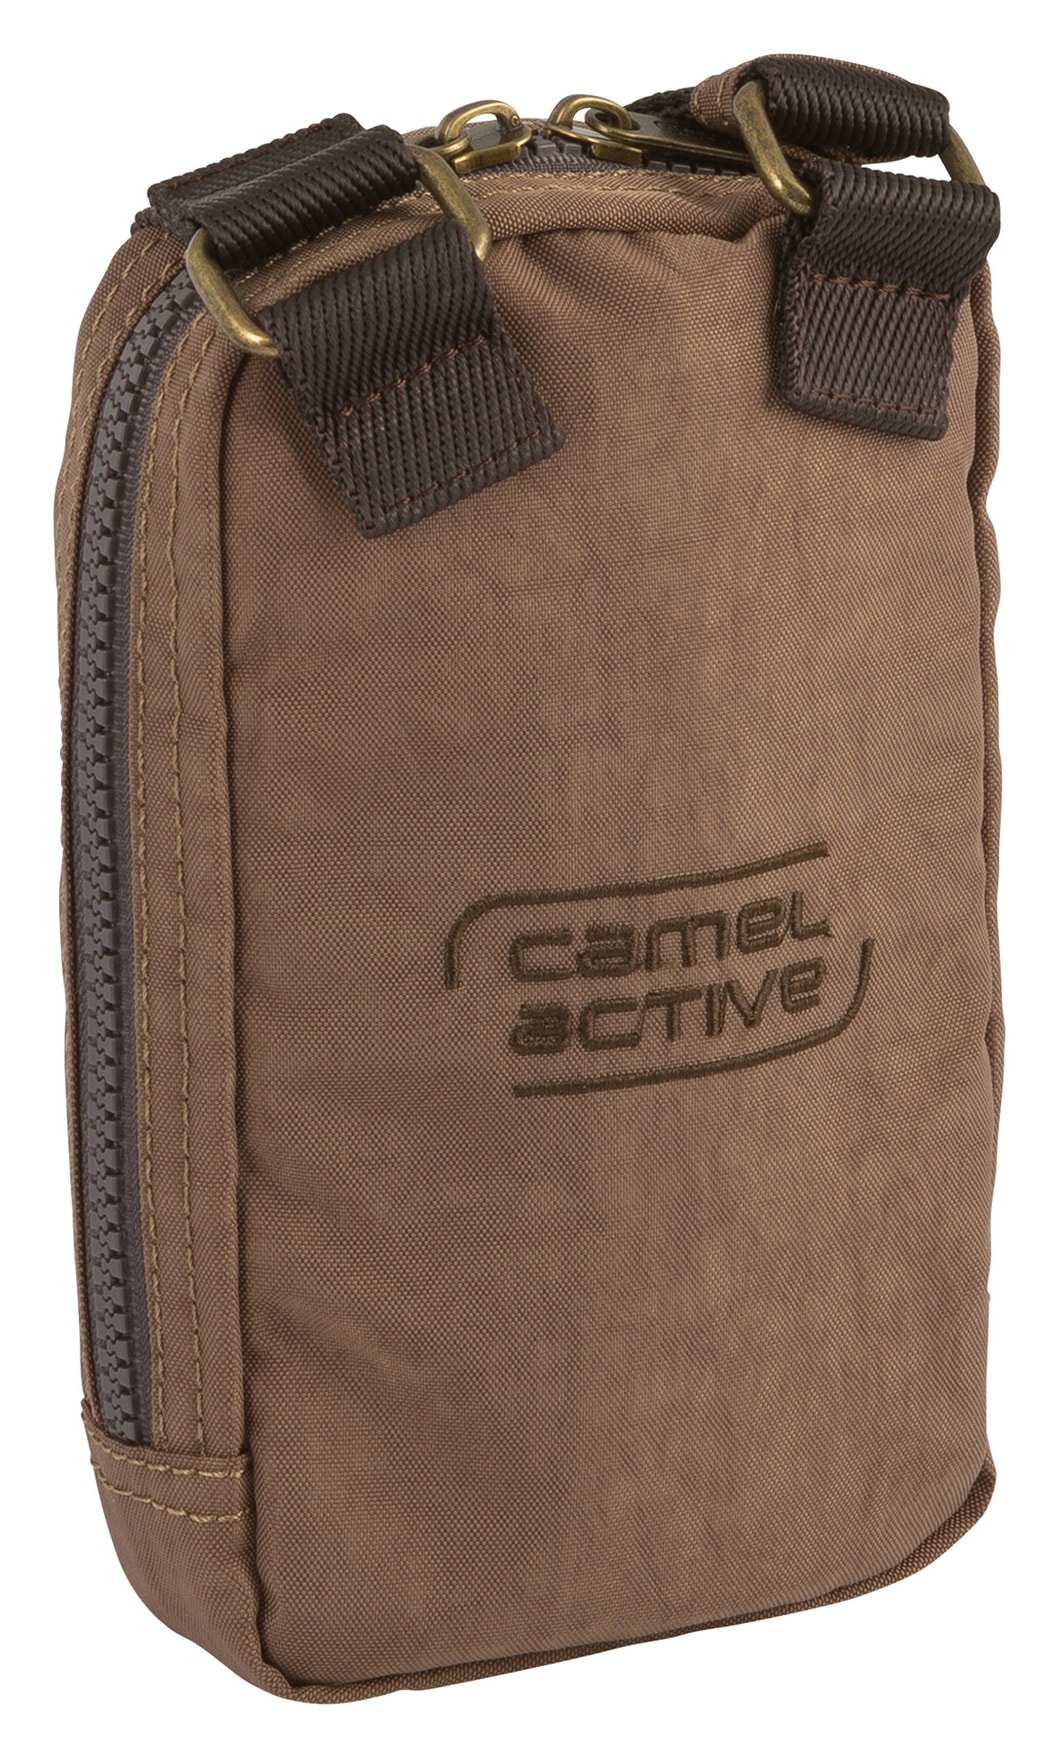 camel active Umhängetasche »Journey«, aus leichtem robusten Nylon, funktional perfekt für alle Lebenslagen